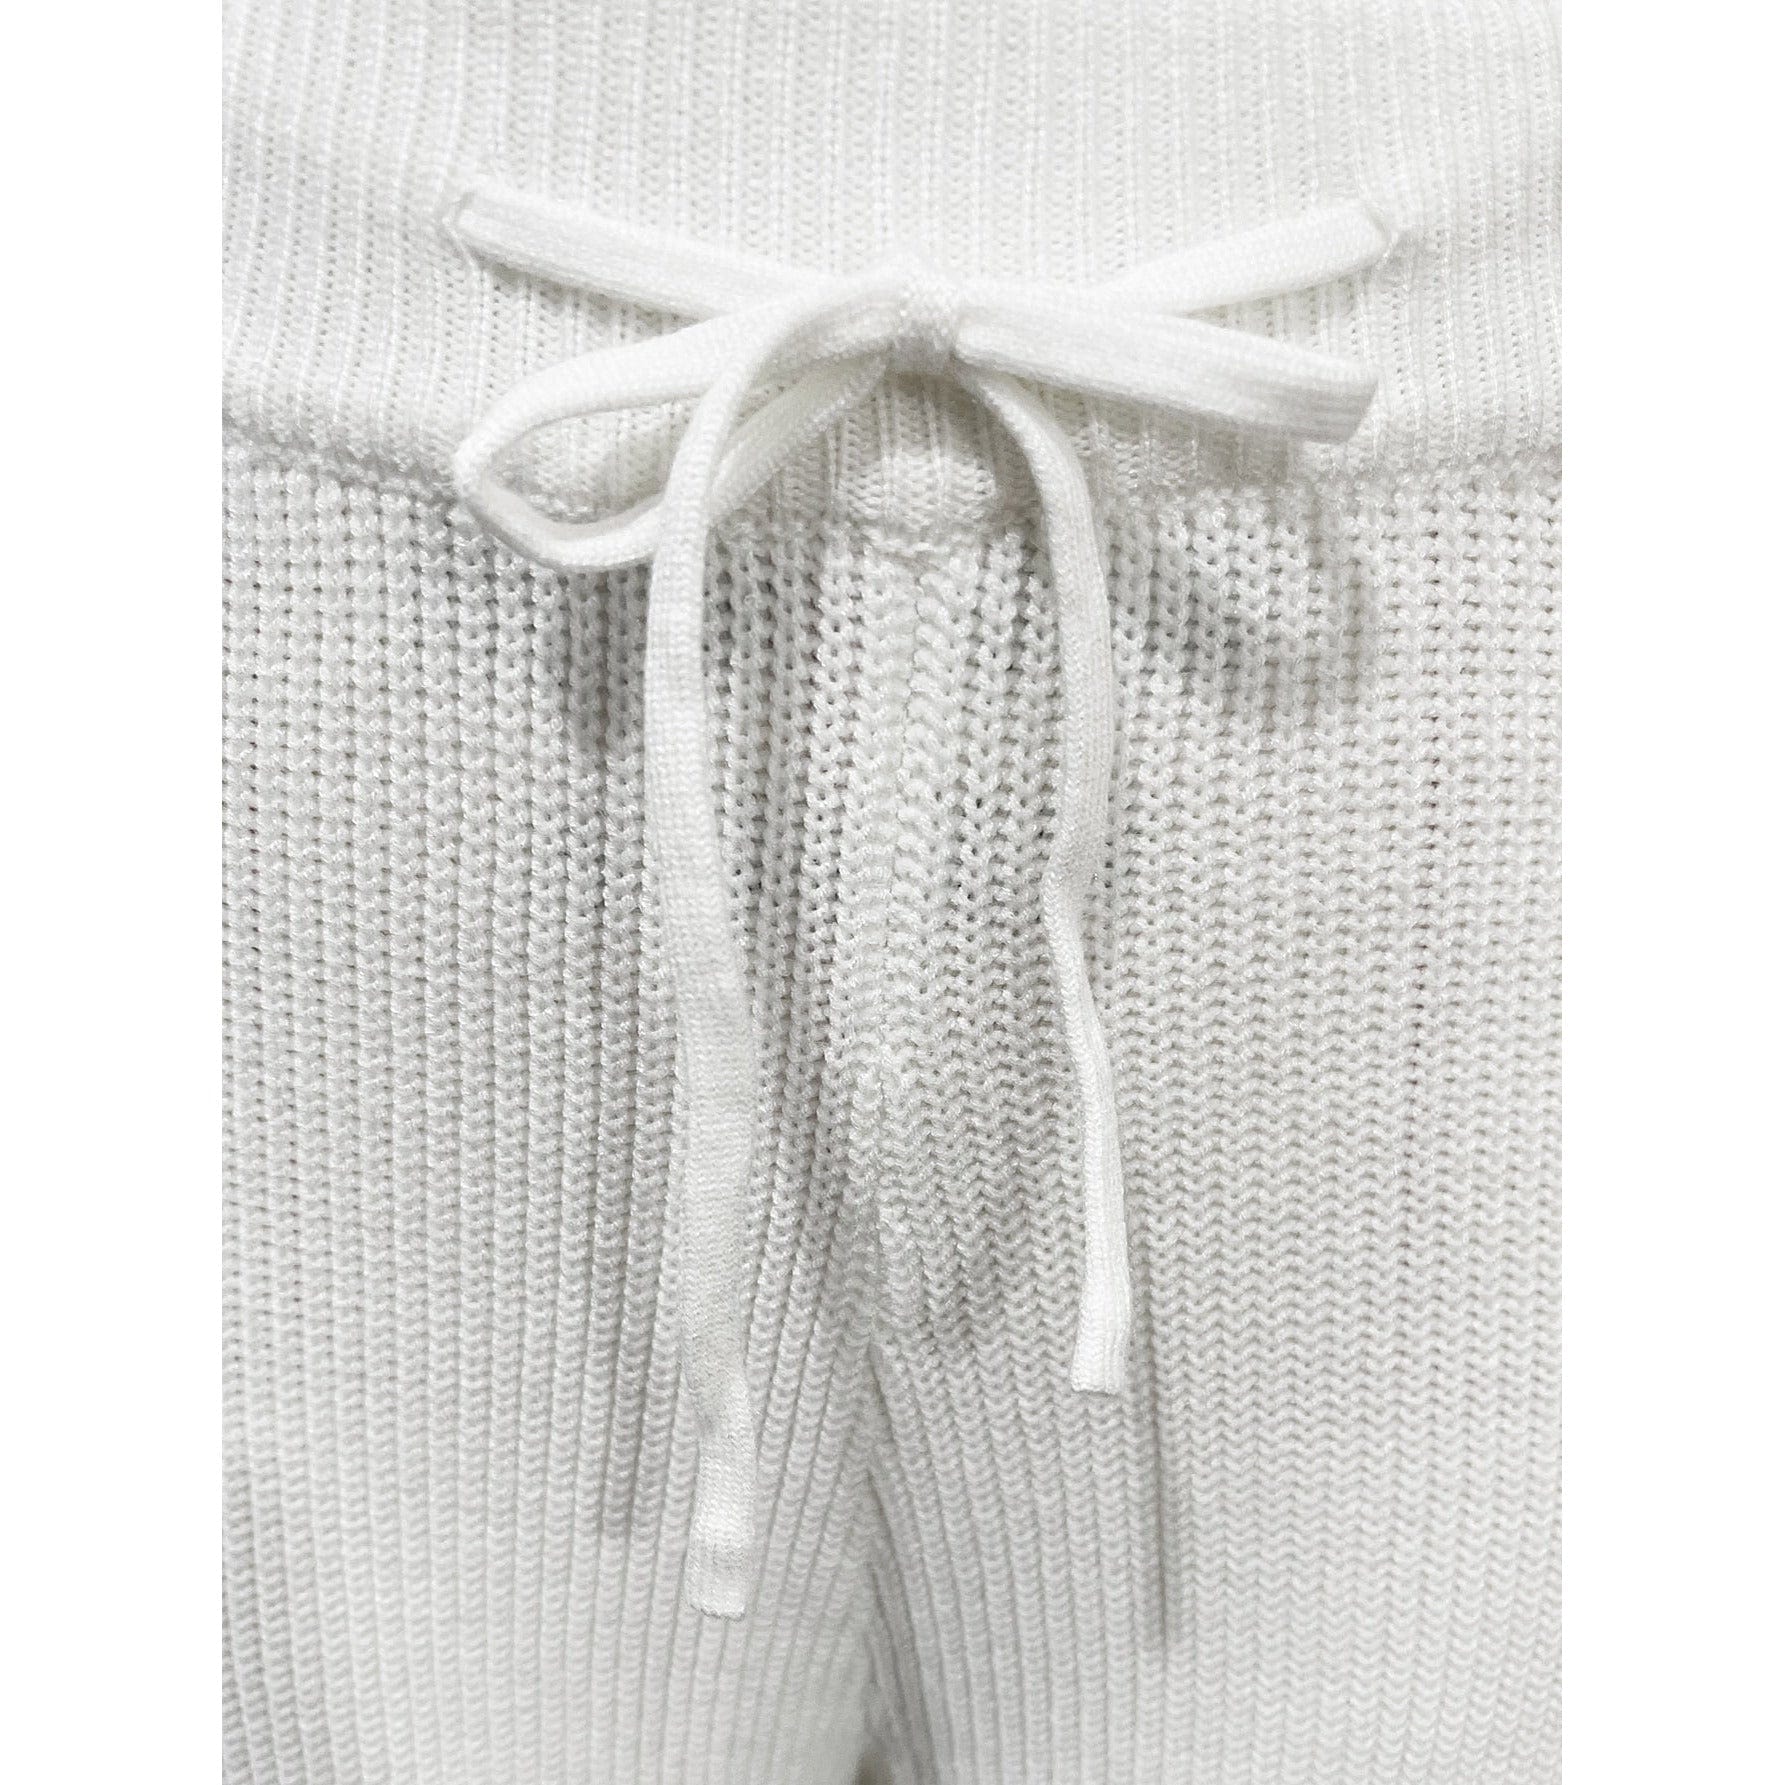 Dolman Sleeve Sweater and Knit Pants Set - Body By J'ne